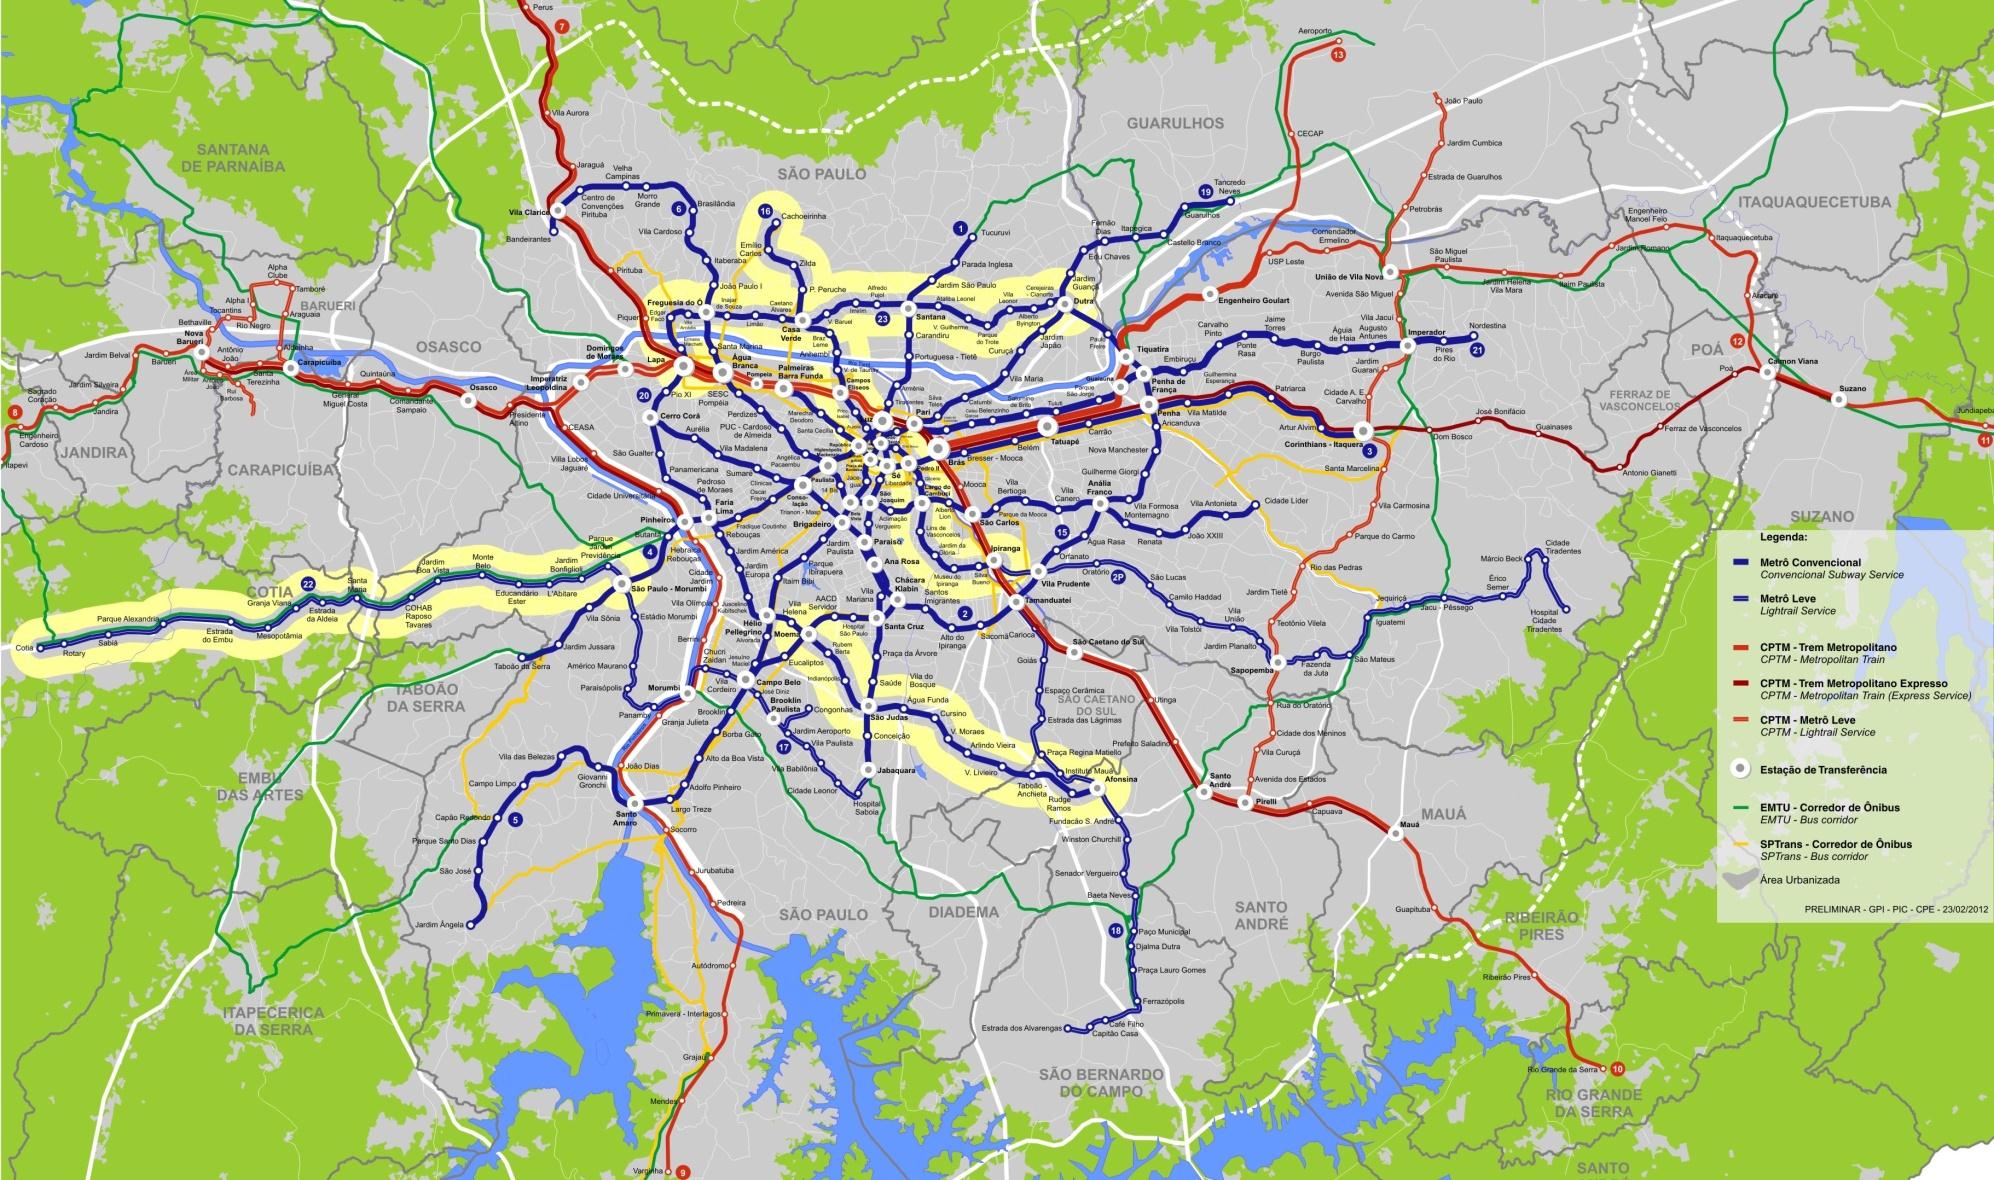 LINHAS EM ESTUDO (2030) Linha 16 (Cachoerinha - Ipiranga) 17,2 km adicionais 21 novas estações Linha 23 (Lapa - Dutra) 16,6 km adicionais 20 novas